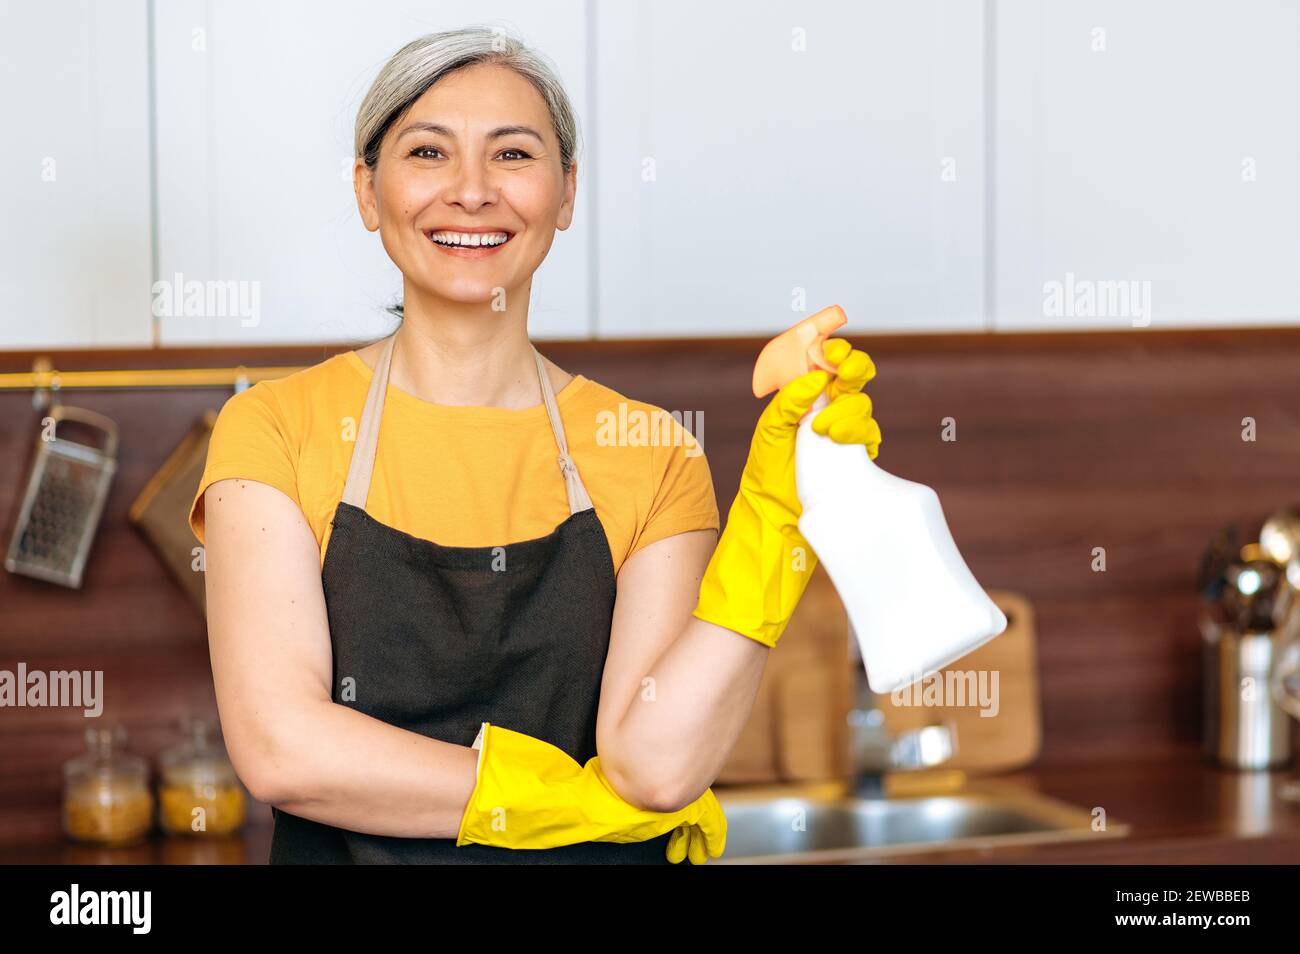 Zufrieden lächelnd reife asiatische Hausfrau oder Putzfrau in gelben Handschuhen und einer Schürze, hält Waschmittel, bereit zu Hause oder im Büro Reinigung, schaut auf die Kamera Stockfoto